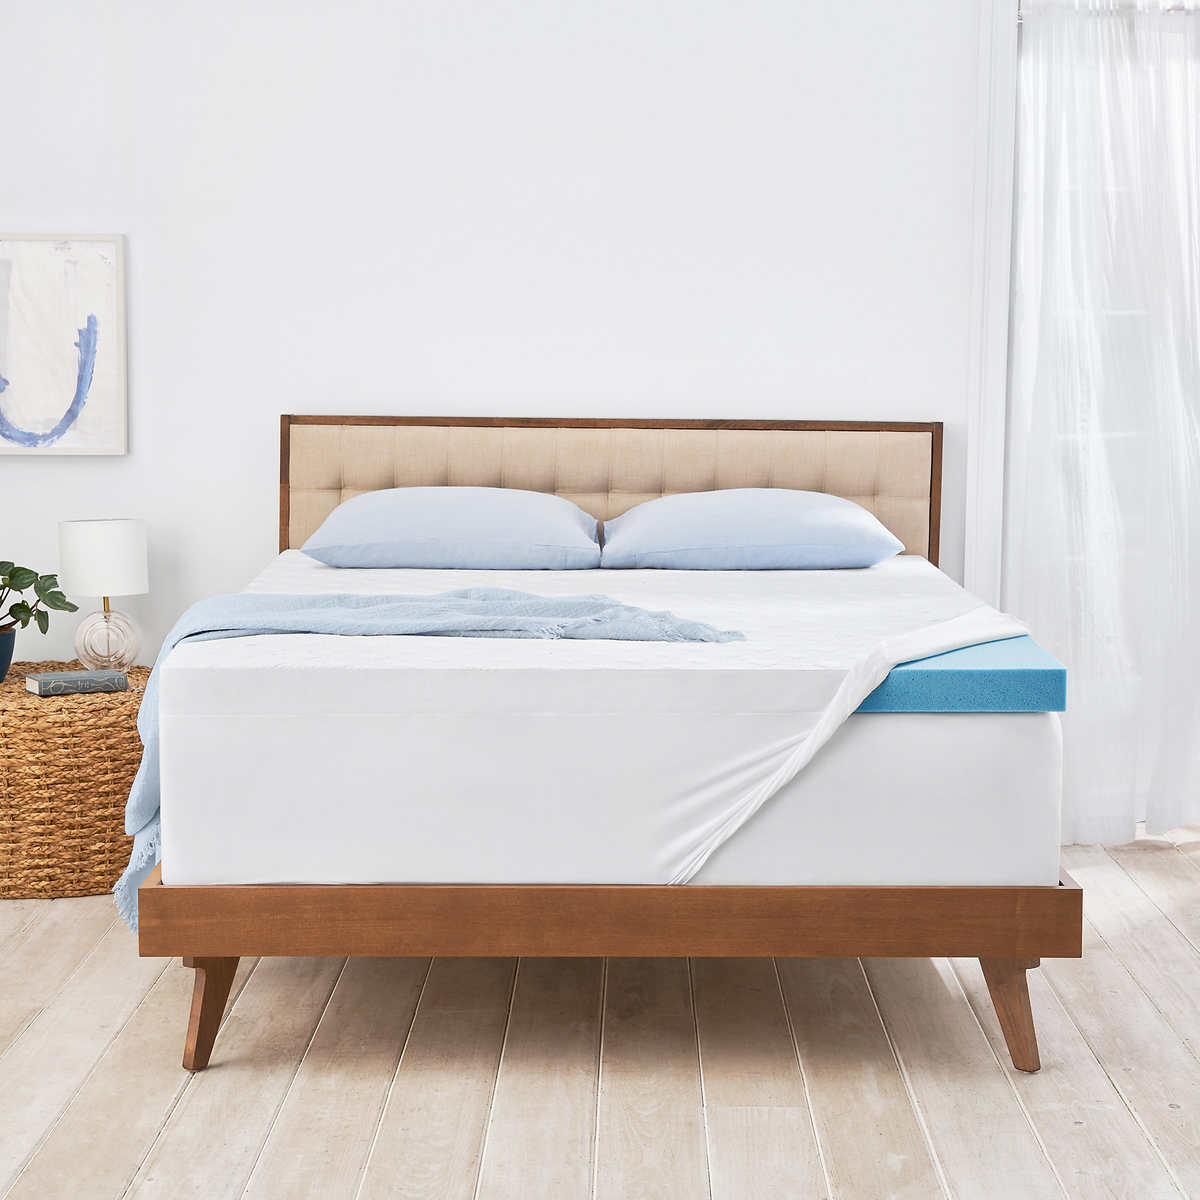 novaform mattress topper canada